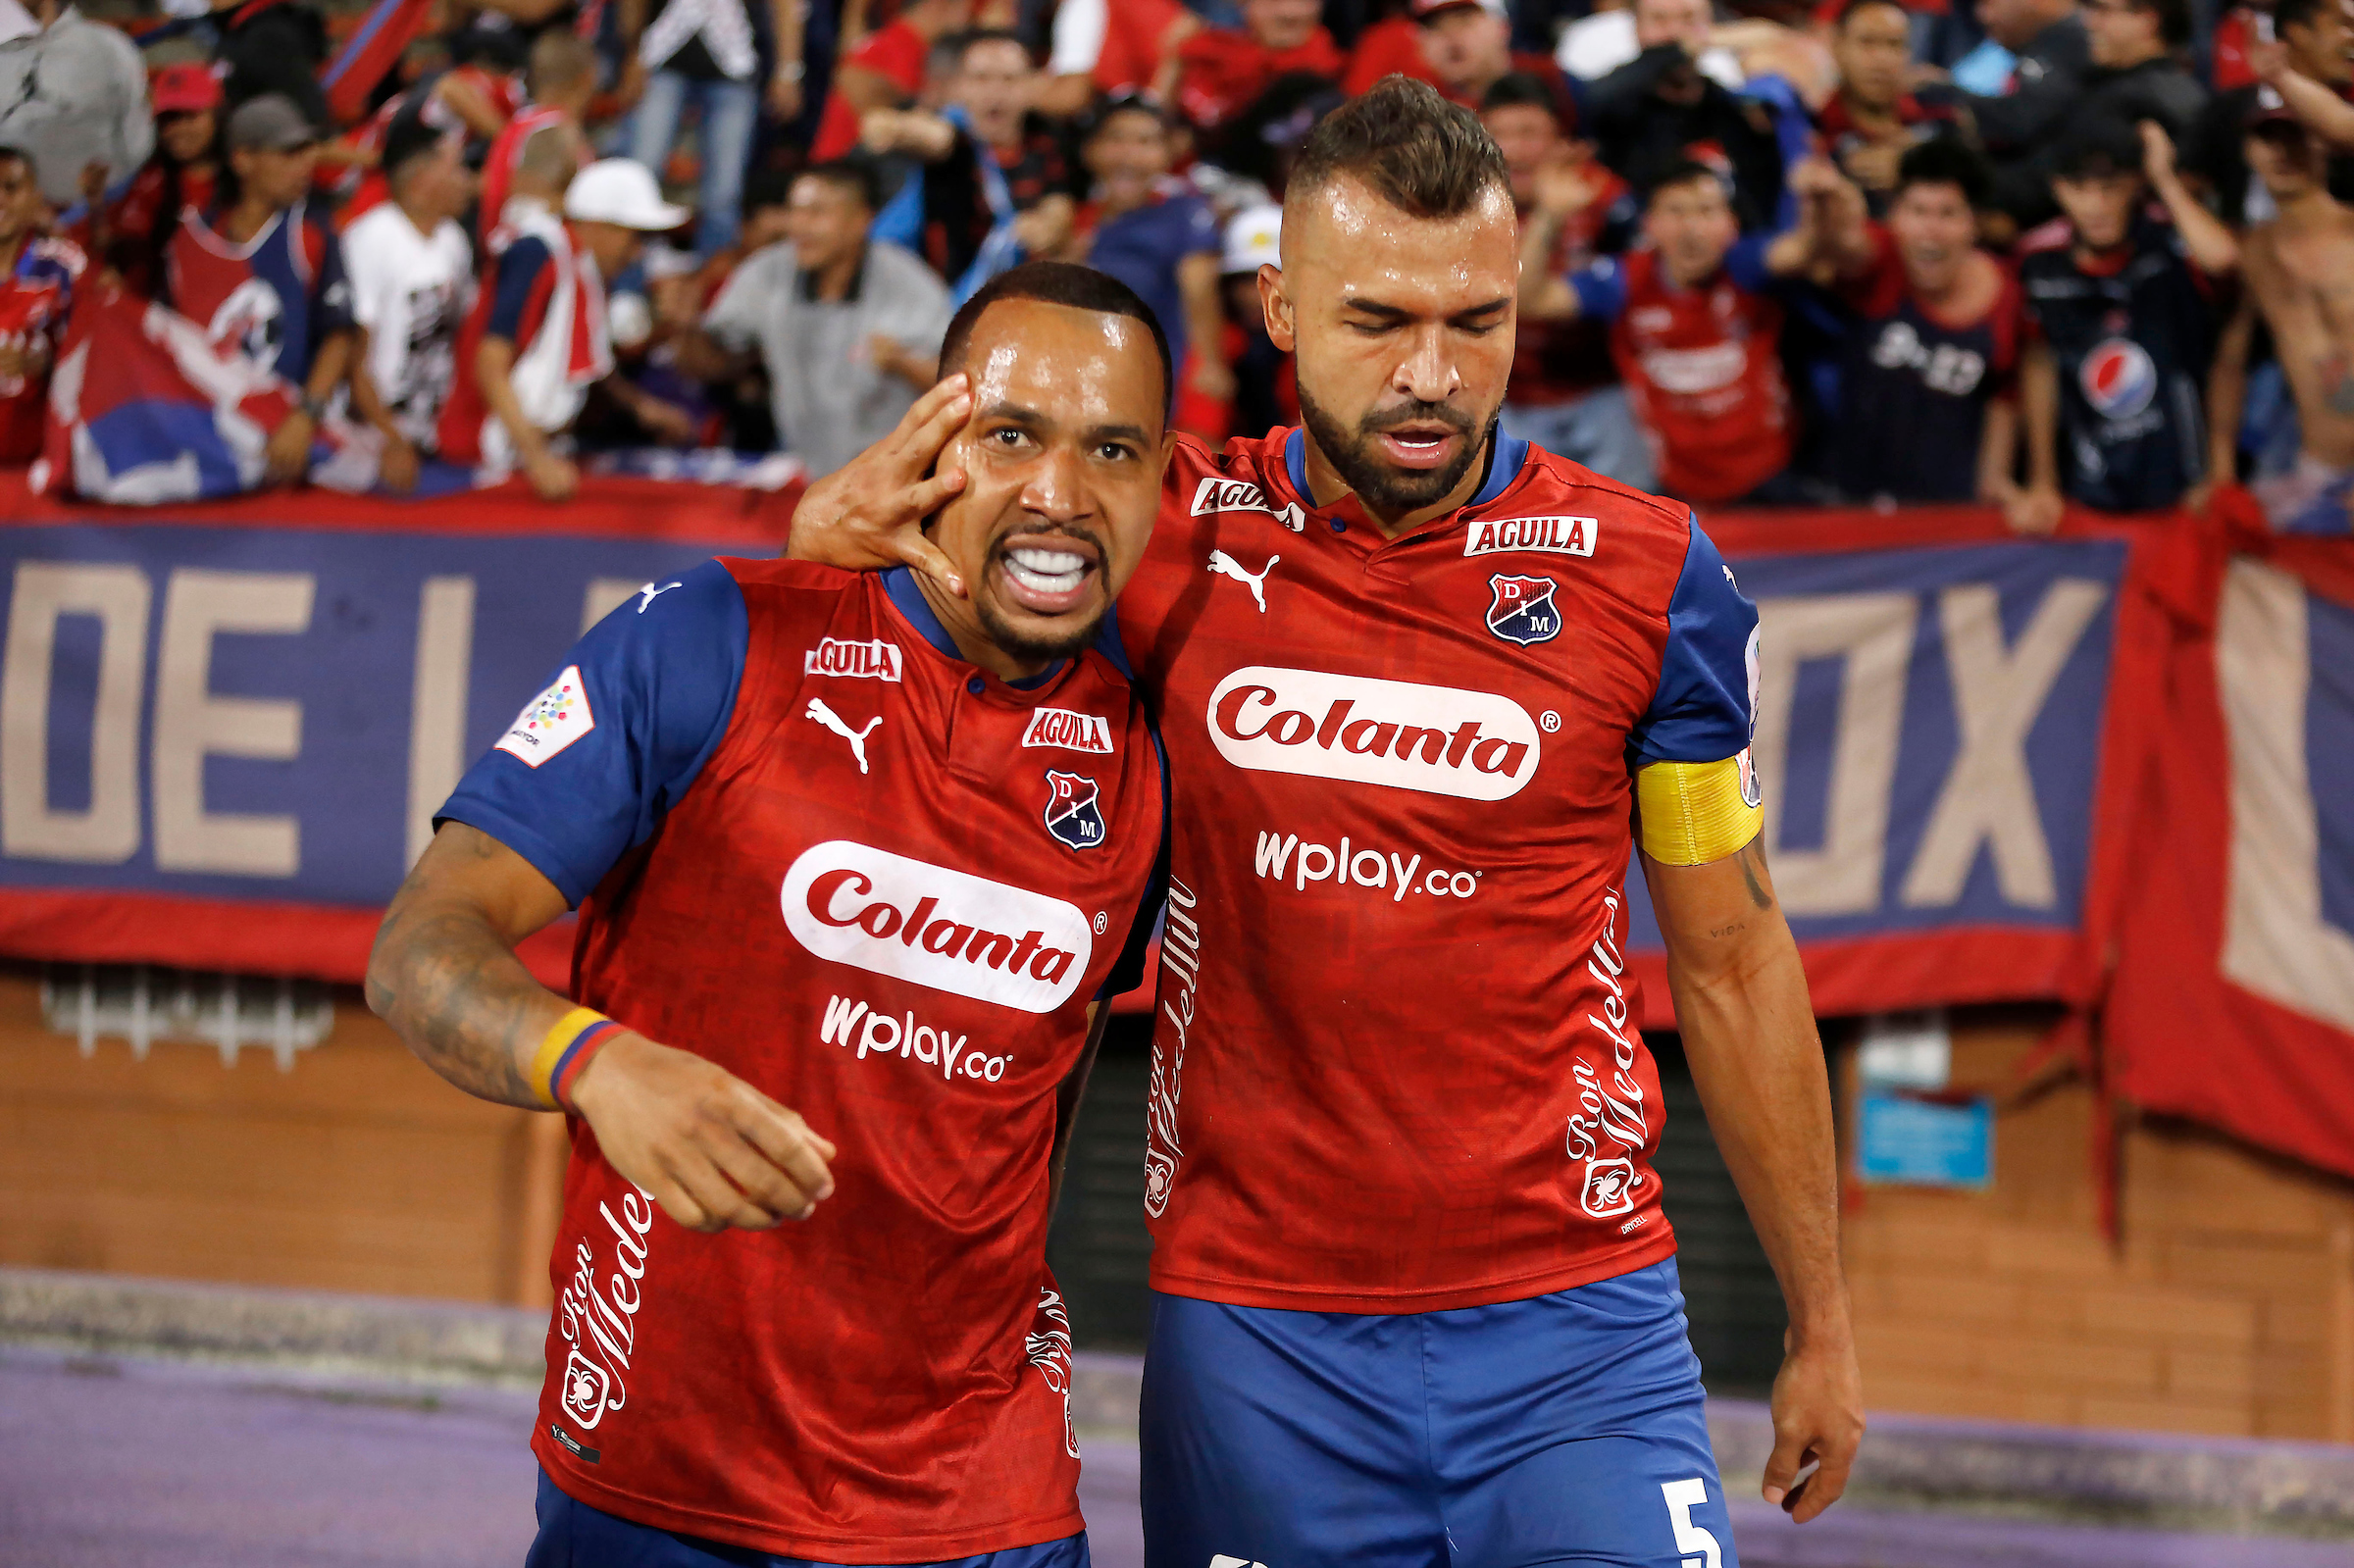 Medellín vs Millonarios promete muchas emociones